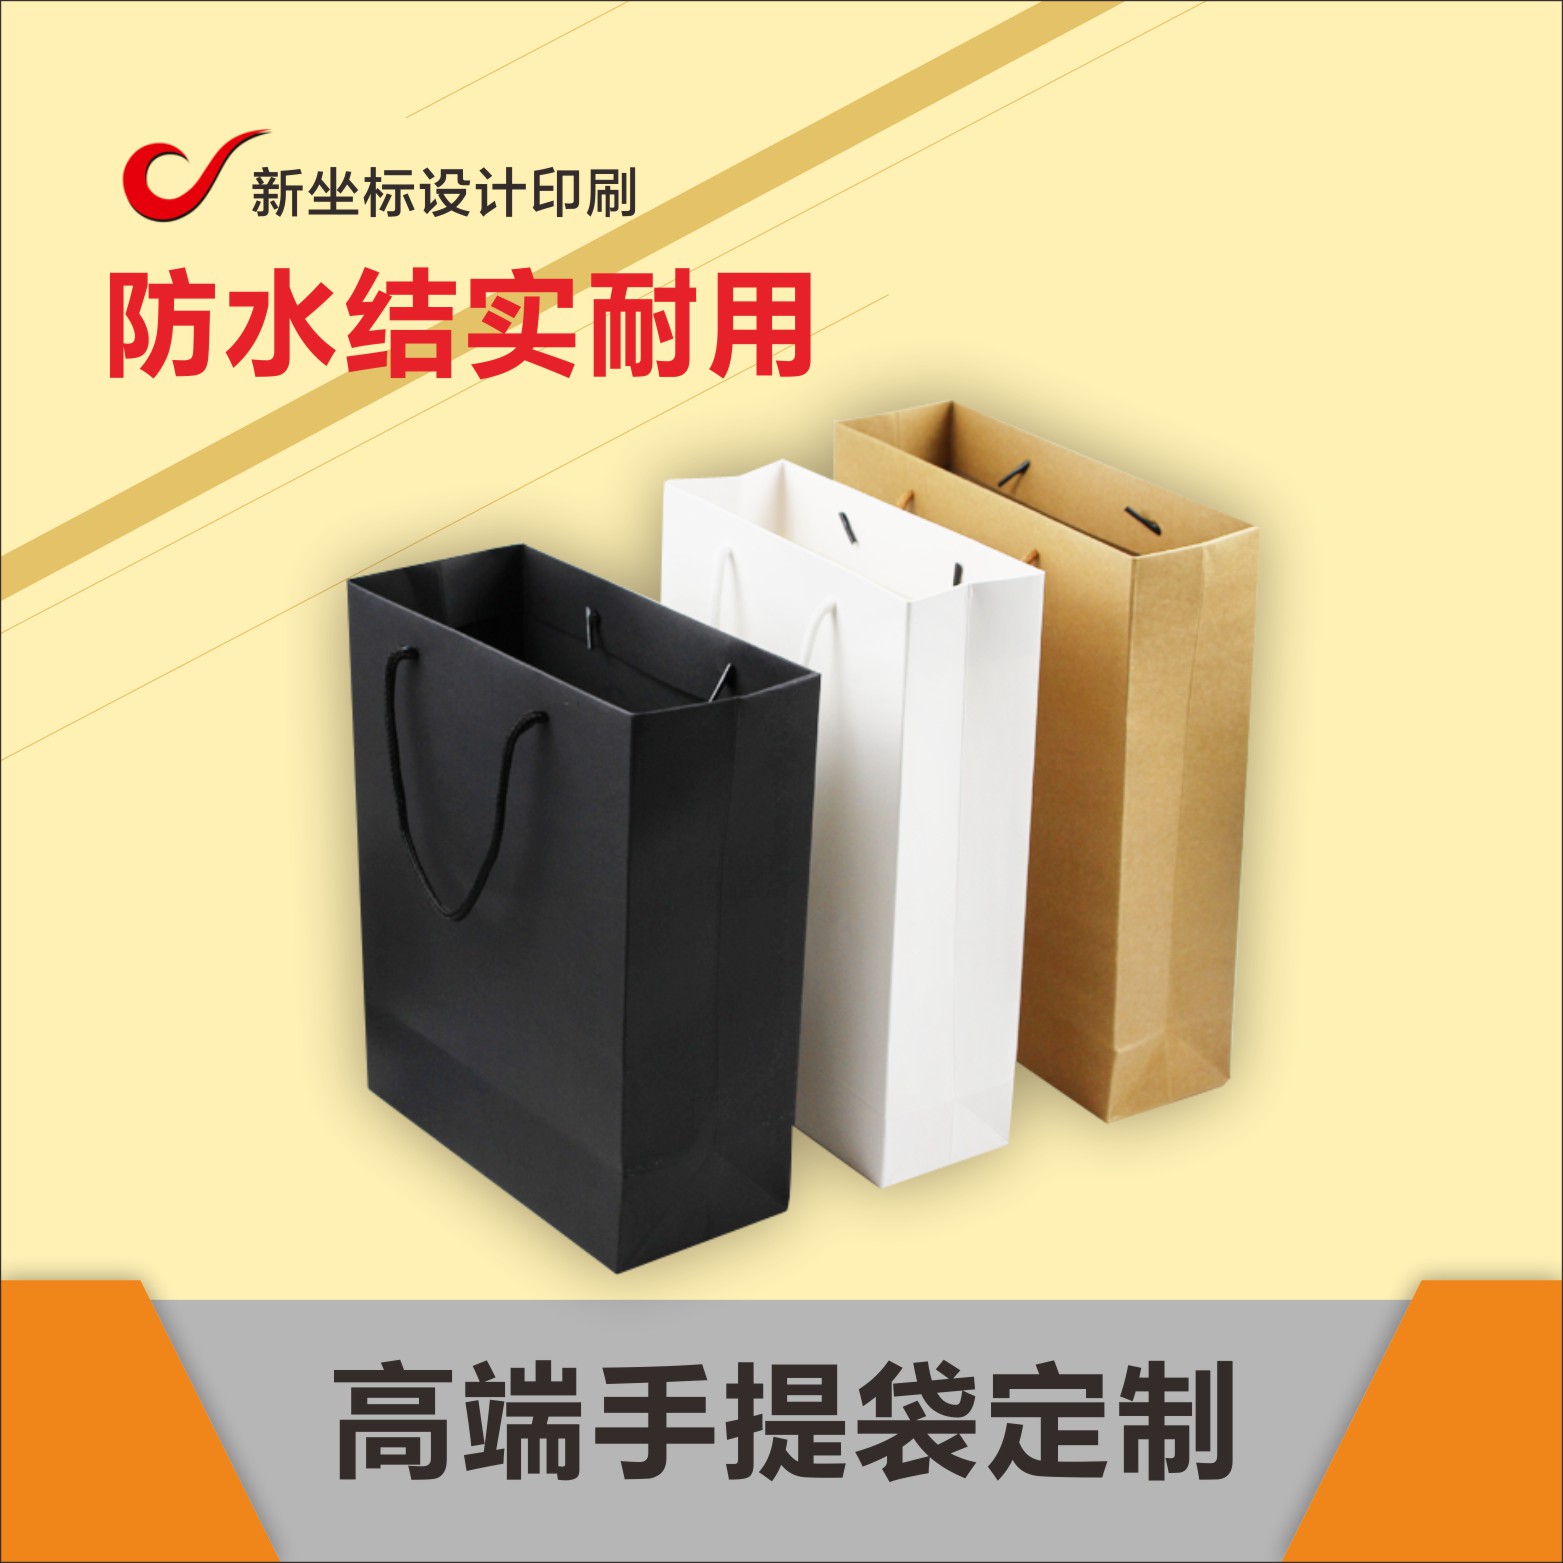 新坐标包装 专业生产 服装袋 打包袋 包装袋 白卡纸袋 全国销售